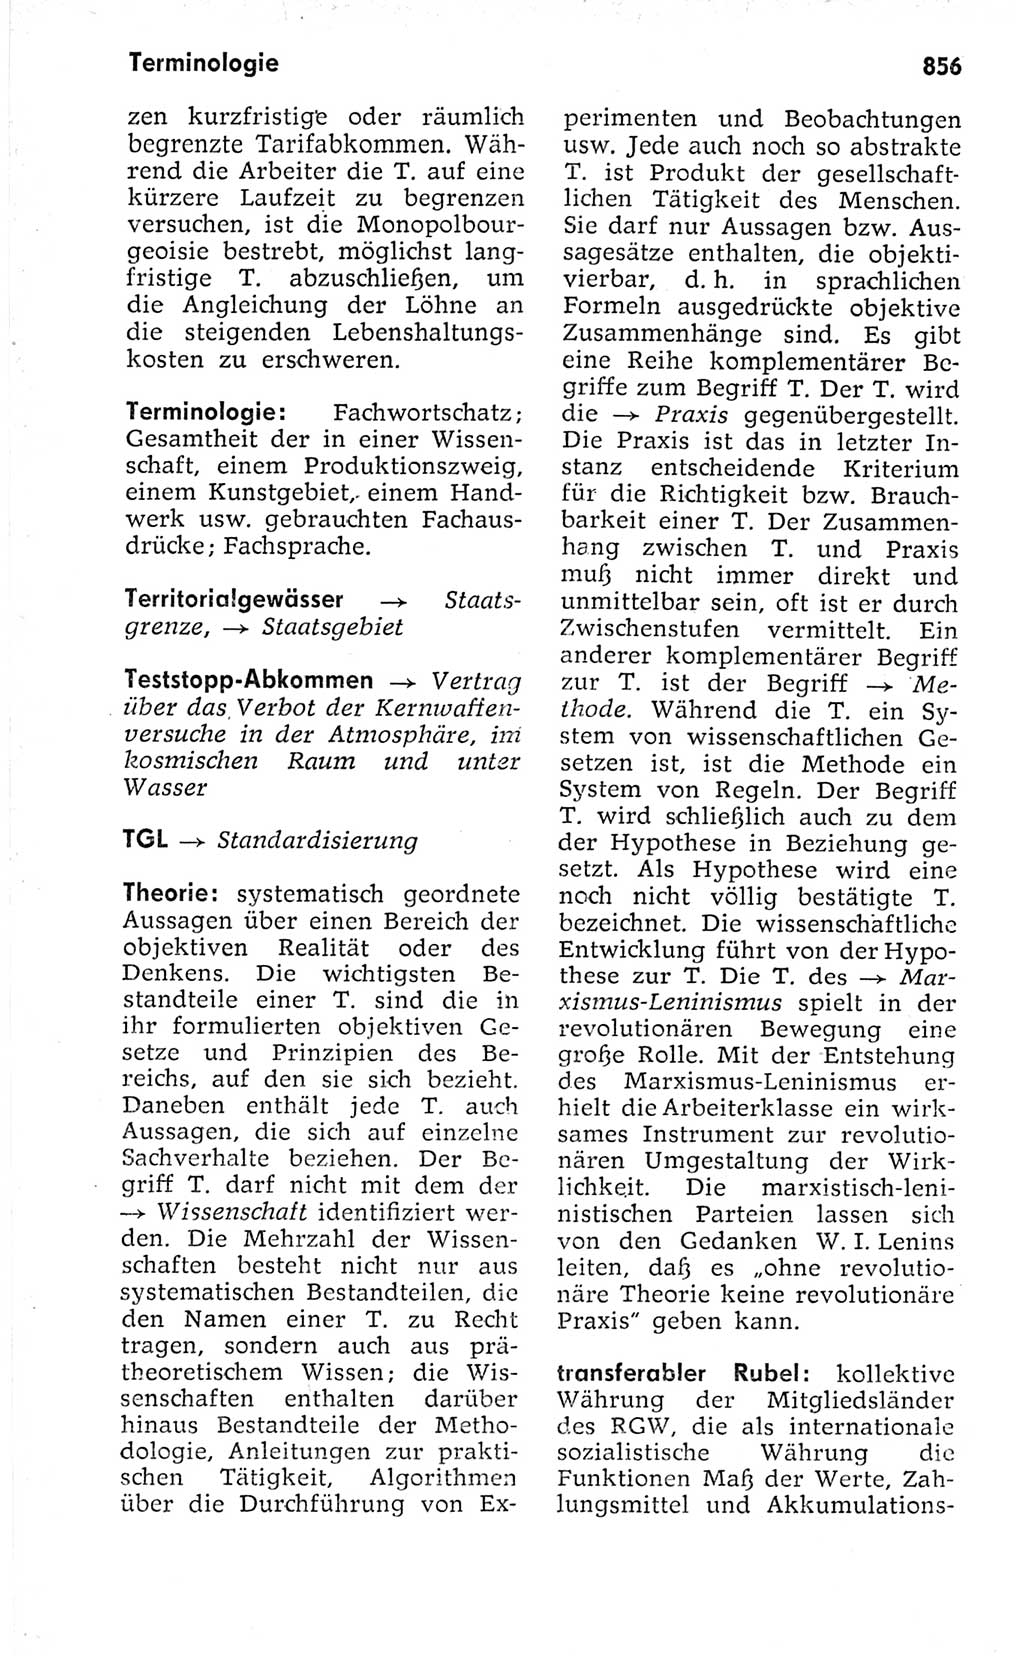 Kleines politisches Wörterbuch [Deutsche Demokratische Republik (DDR)] 1973, Seite 856 (Kl. pol. Wb. DDR 1973, S. 856)